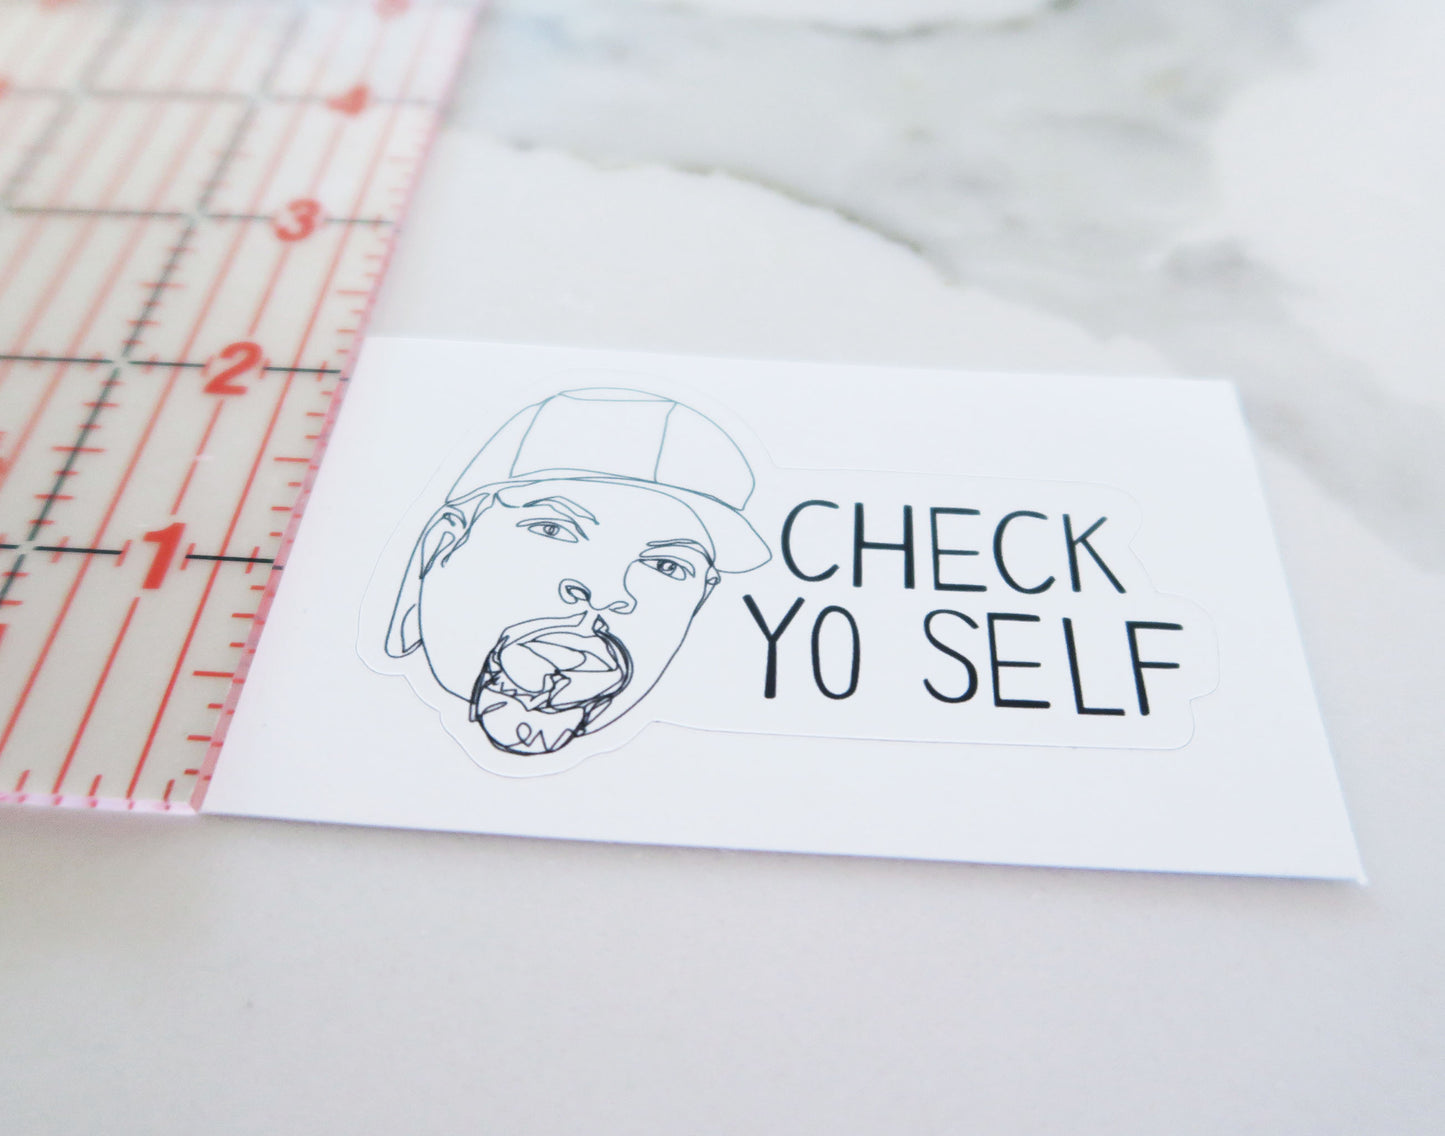 Check Yo Self (It's good to do) Vinyl Sticker